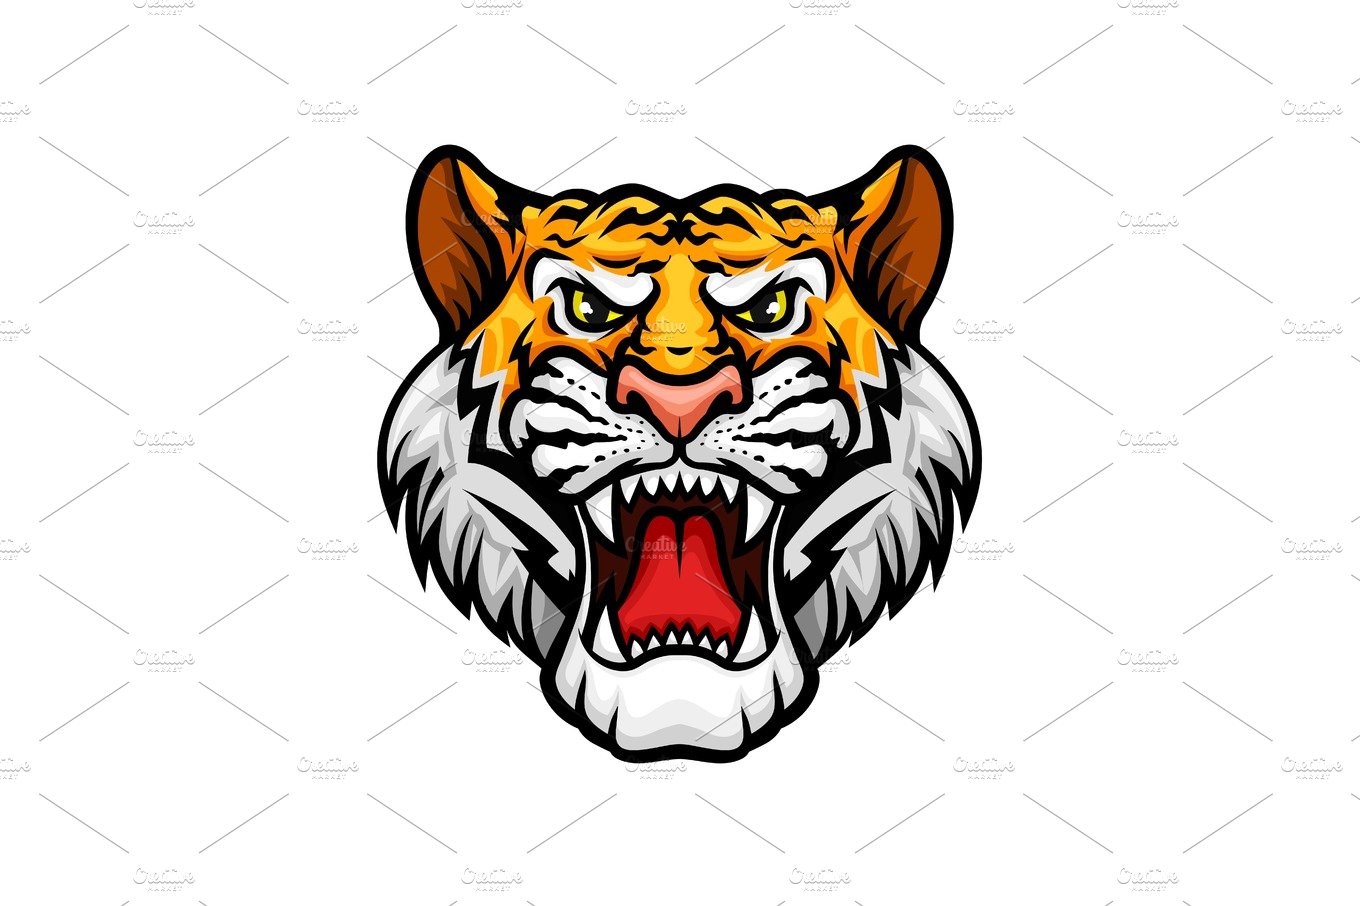 Tiger roaring head muzzle vector mascot icon cover image.